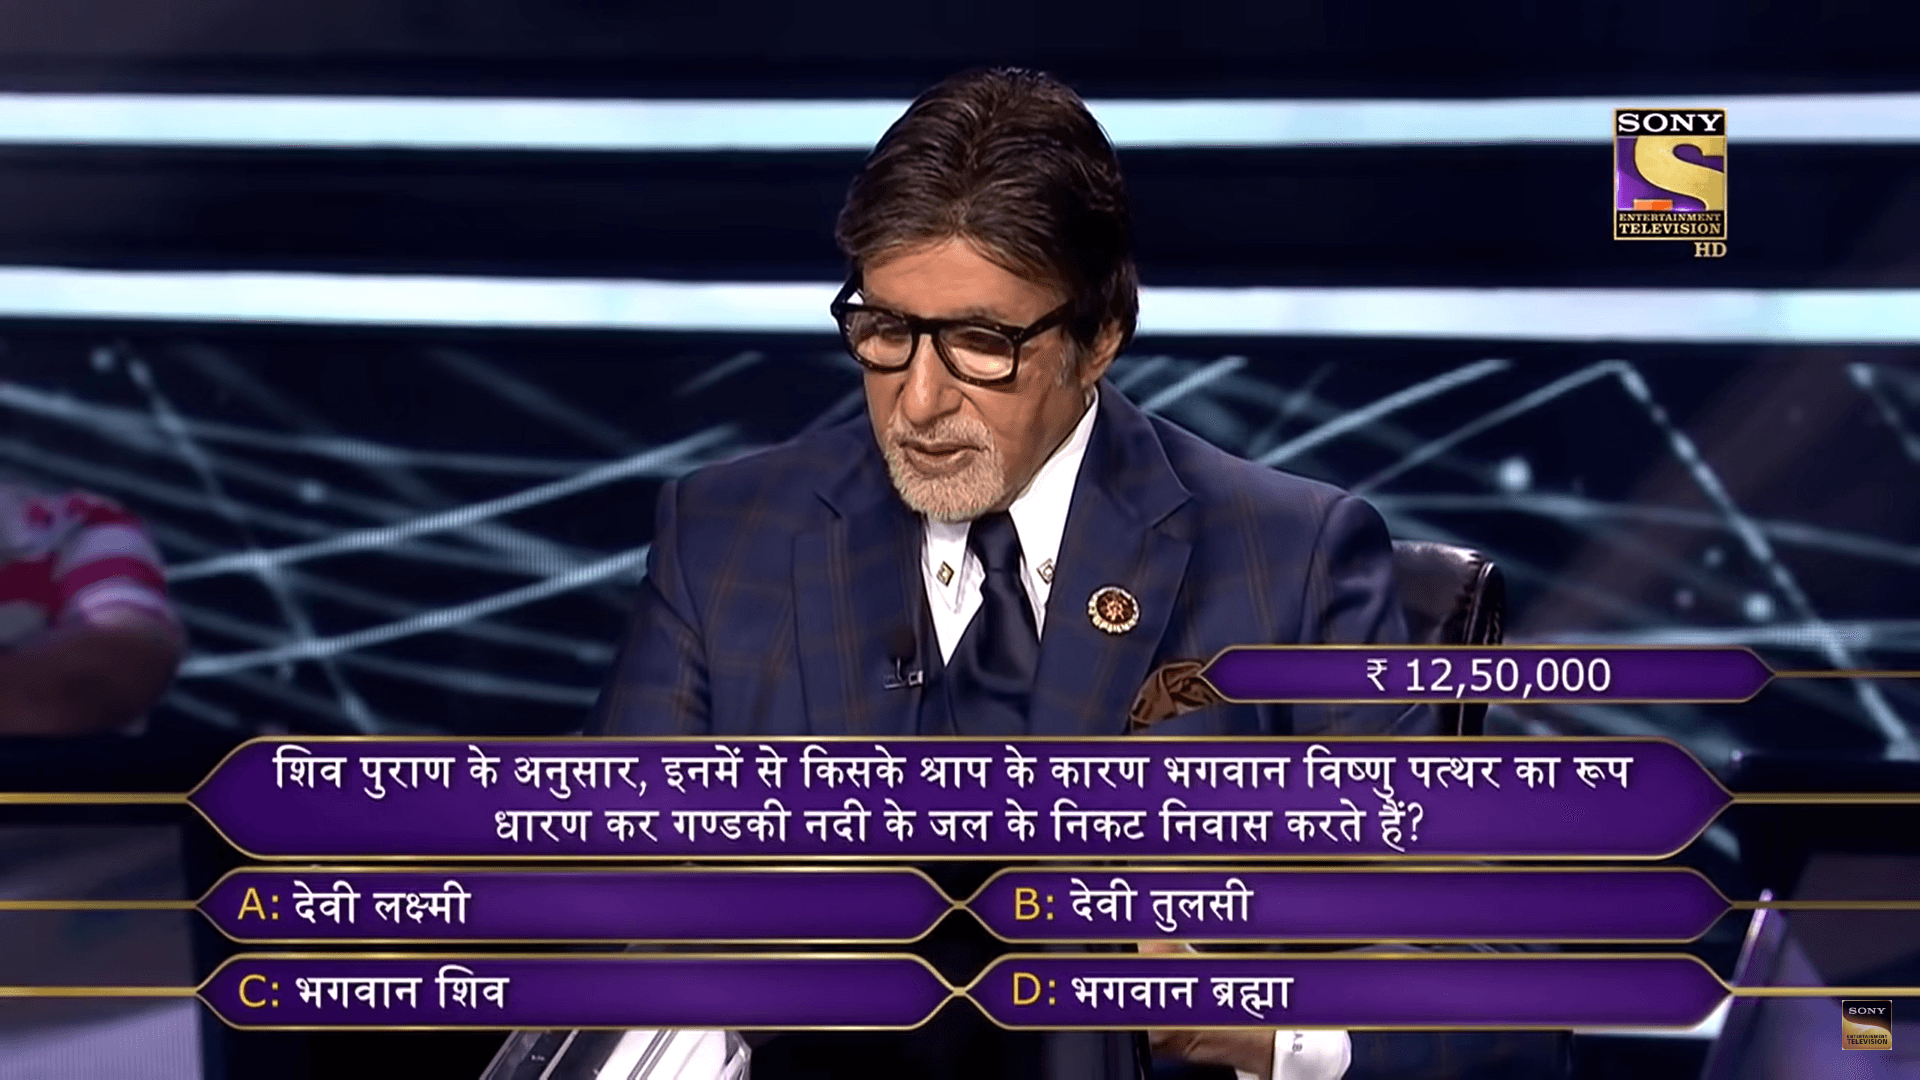 KBC 12 की तीसरी करोड़पति से पूछा गया था शिव पुराण से जुड़ा सवाल, ज्ञानी हो तो बताओ जवाब